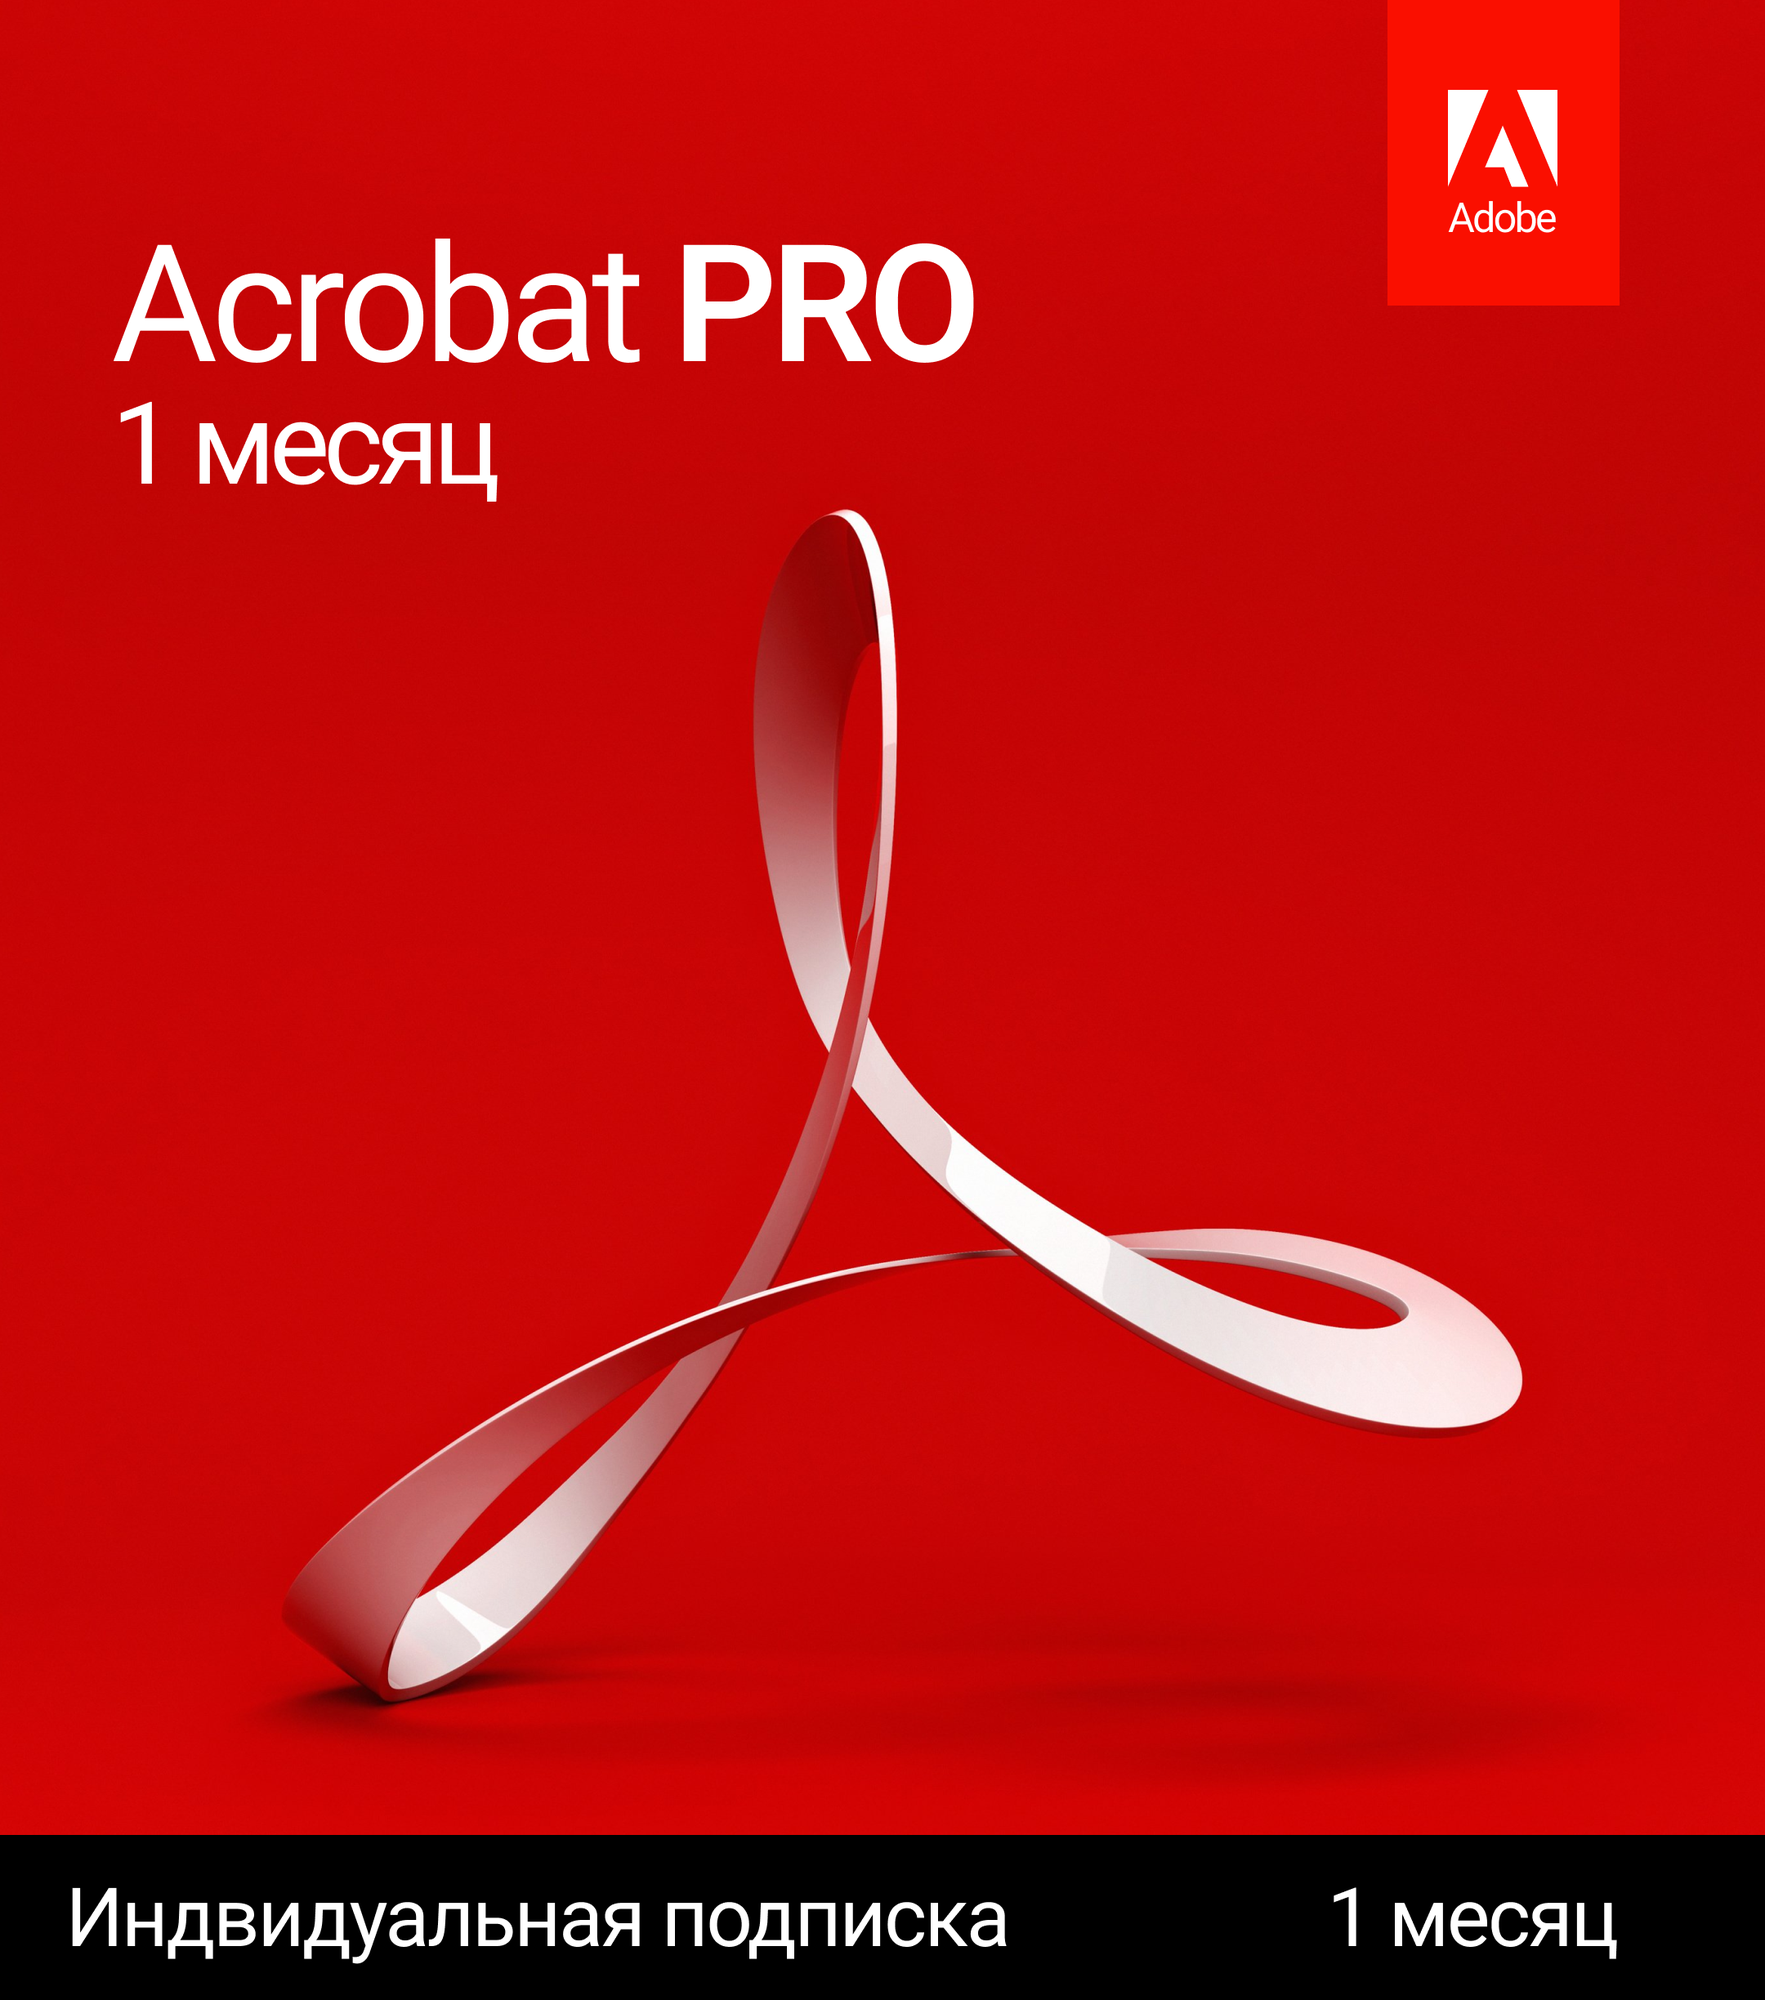 Acrobat Pro 1 месяц активация на аккаунт